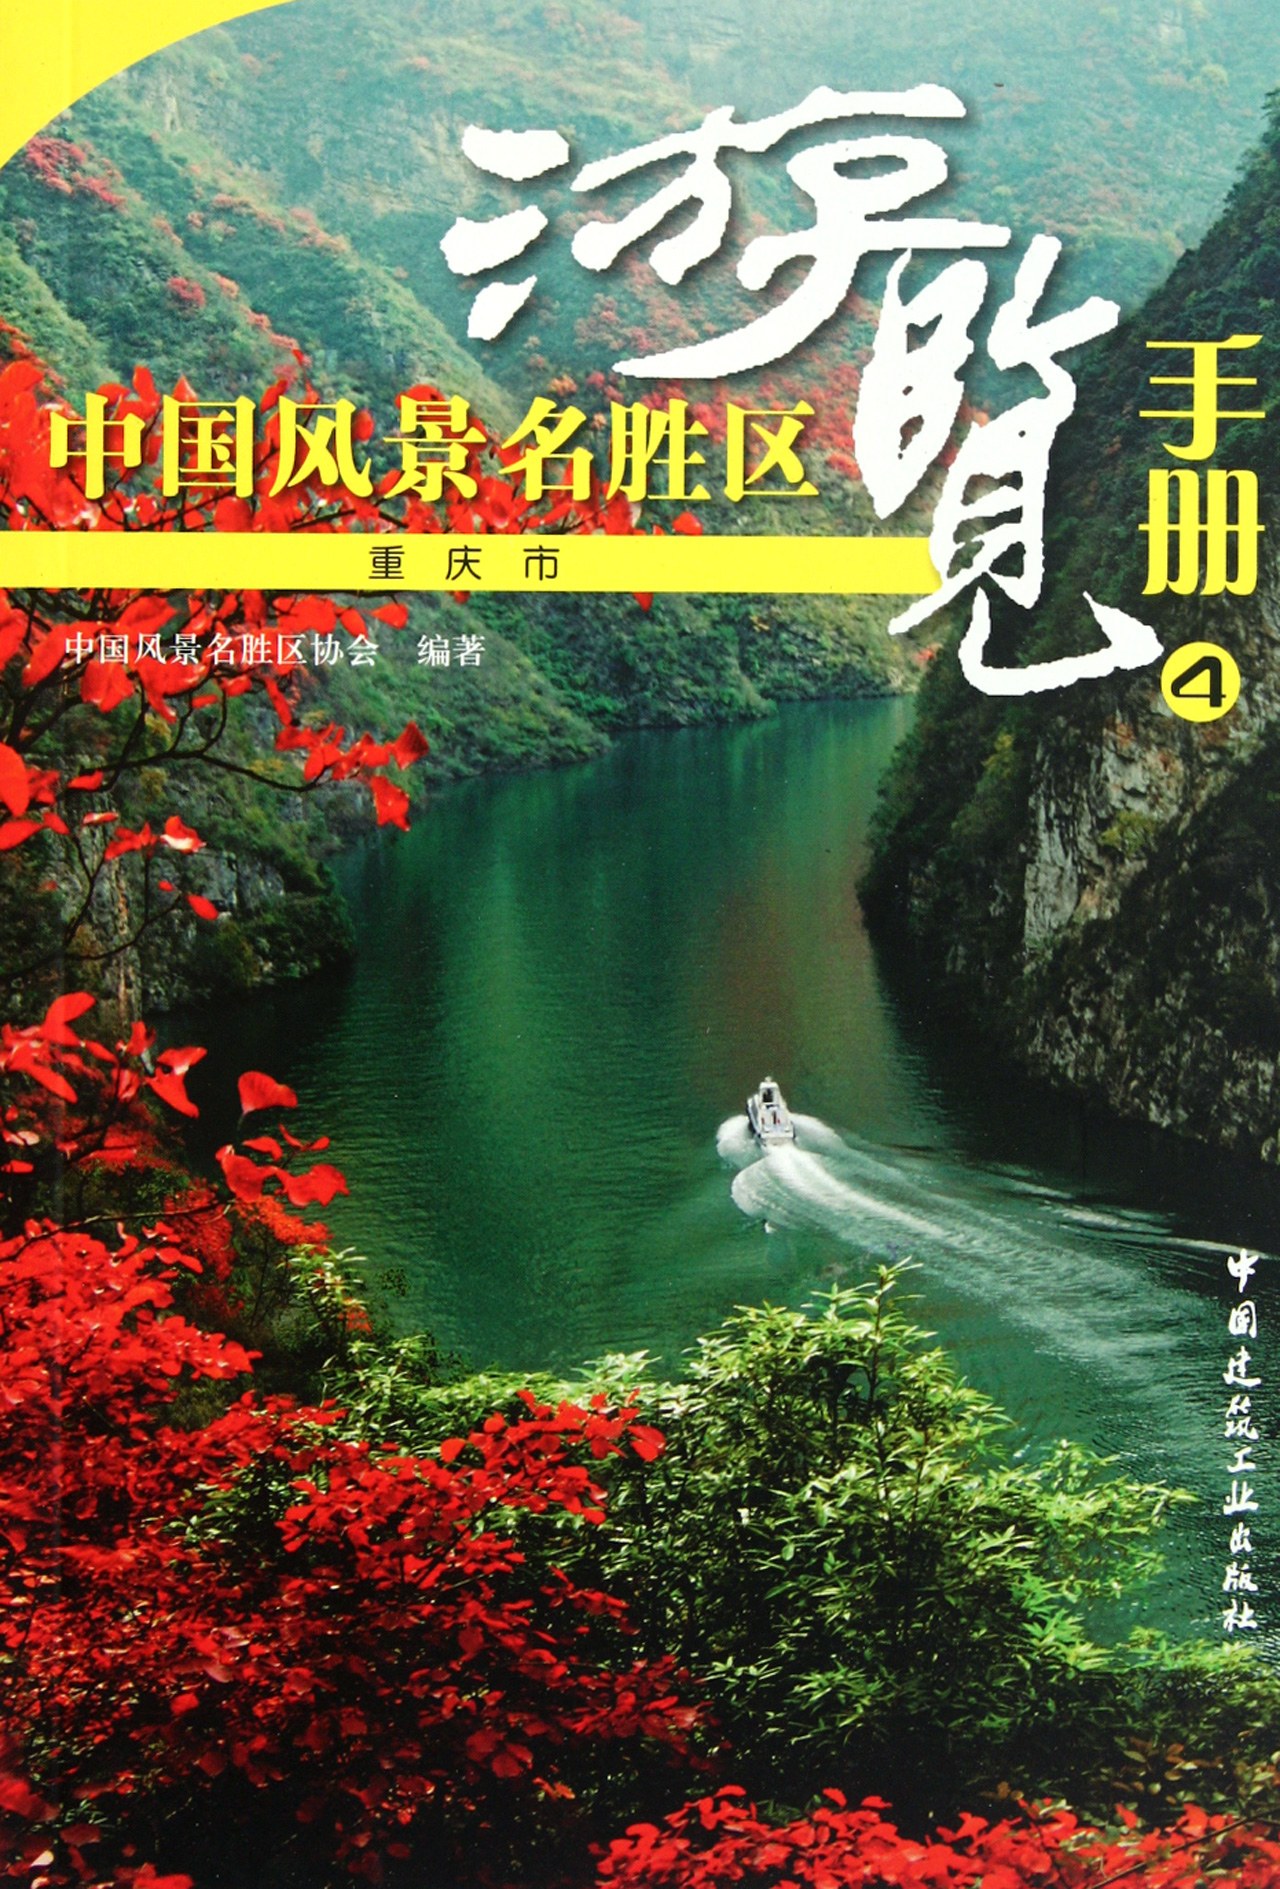 中国风景名胜区游览手册(4重庆市)